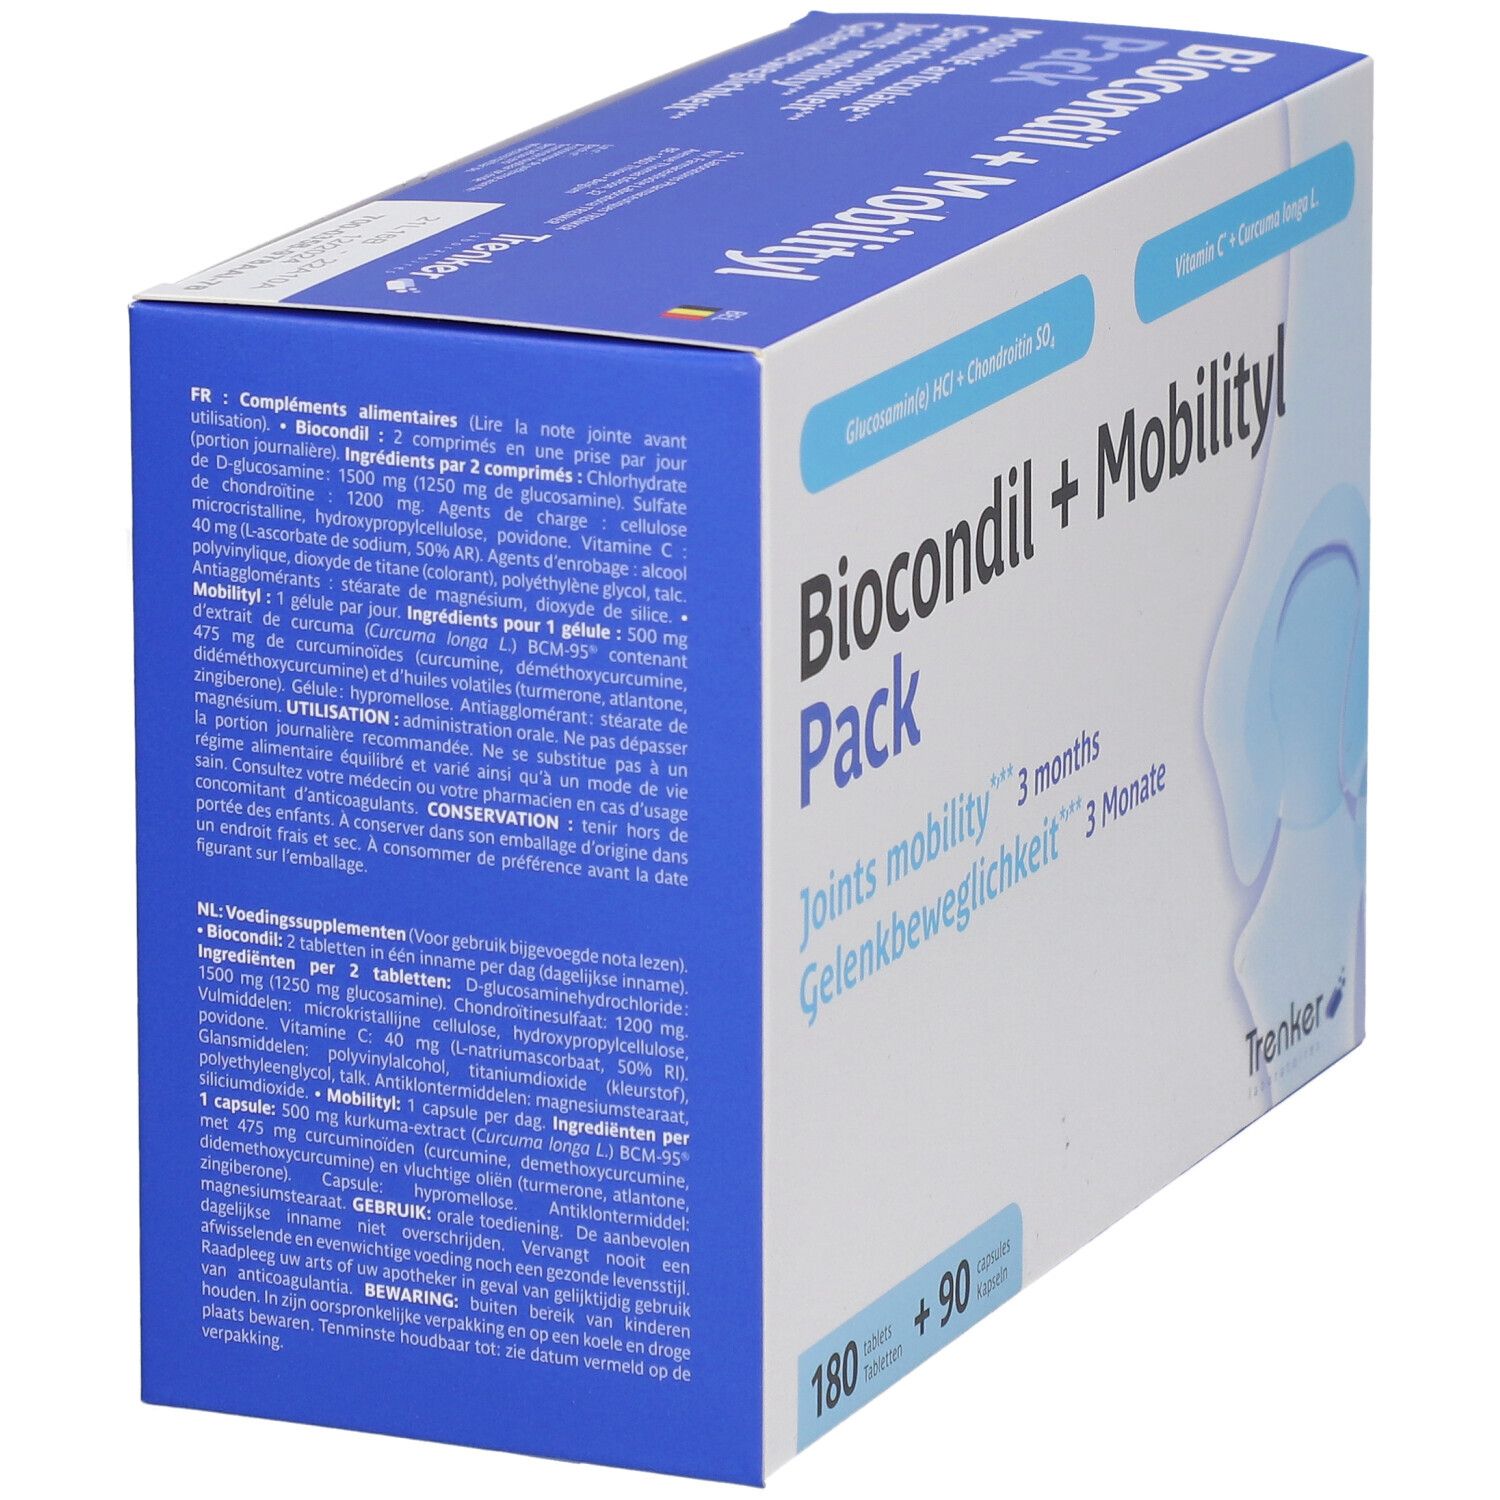 Trenker Biocondil + Mobilityl Pack